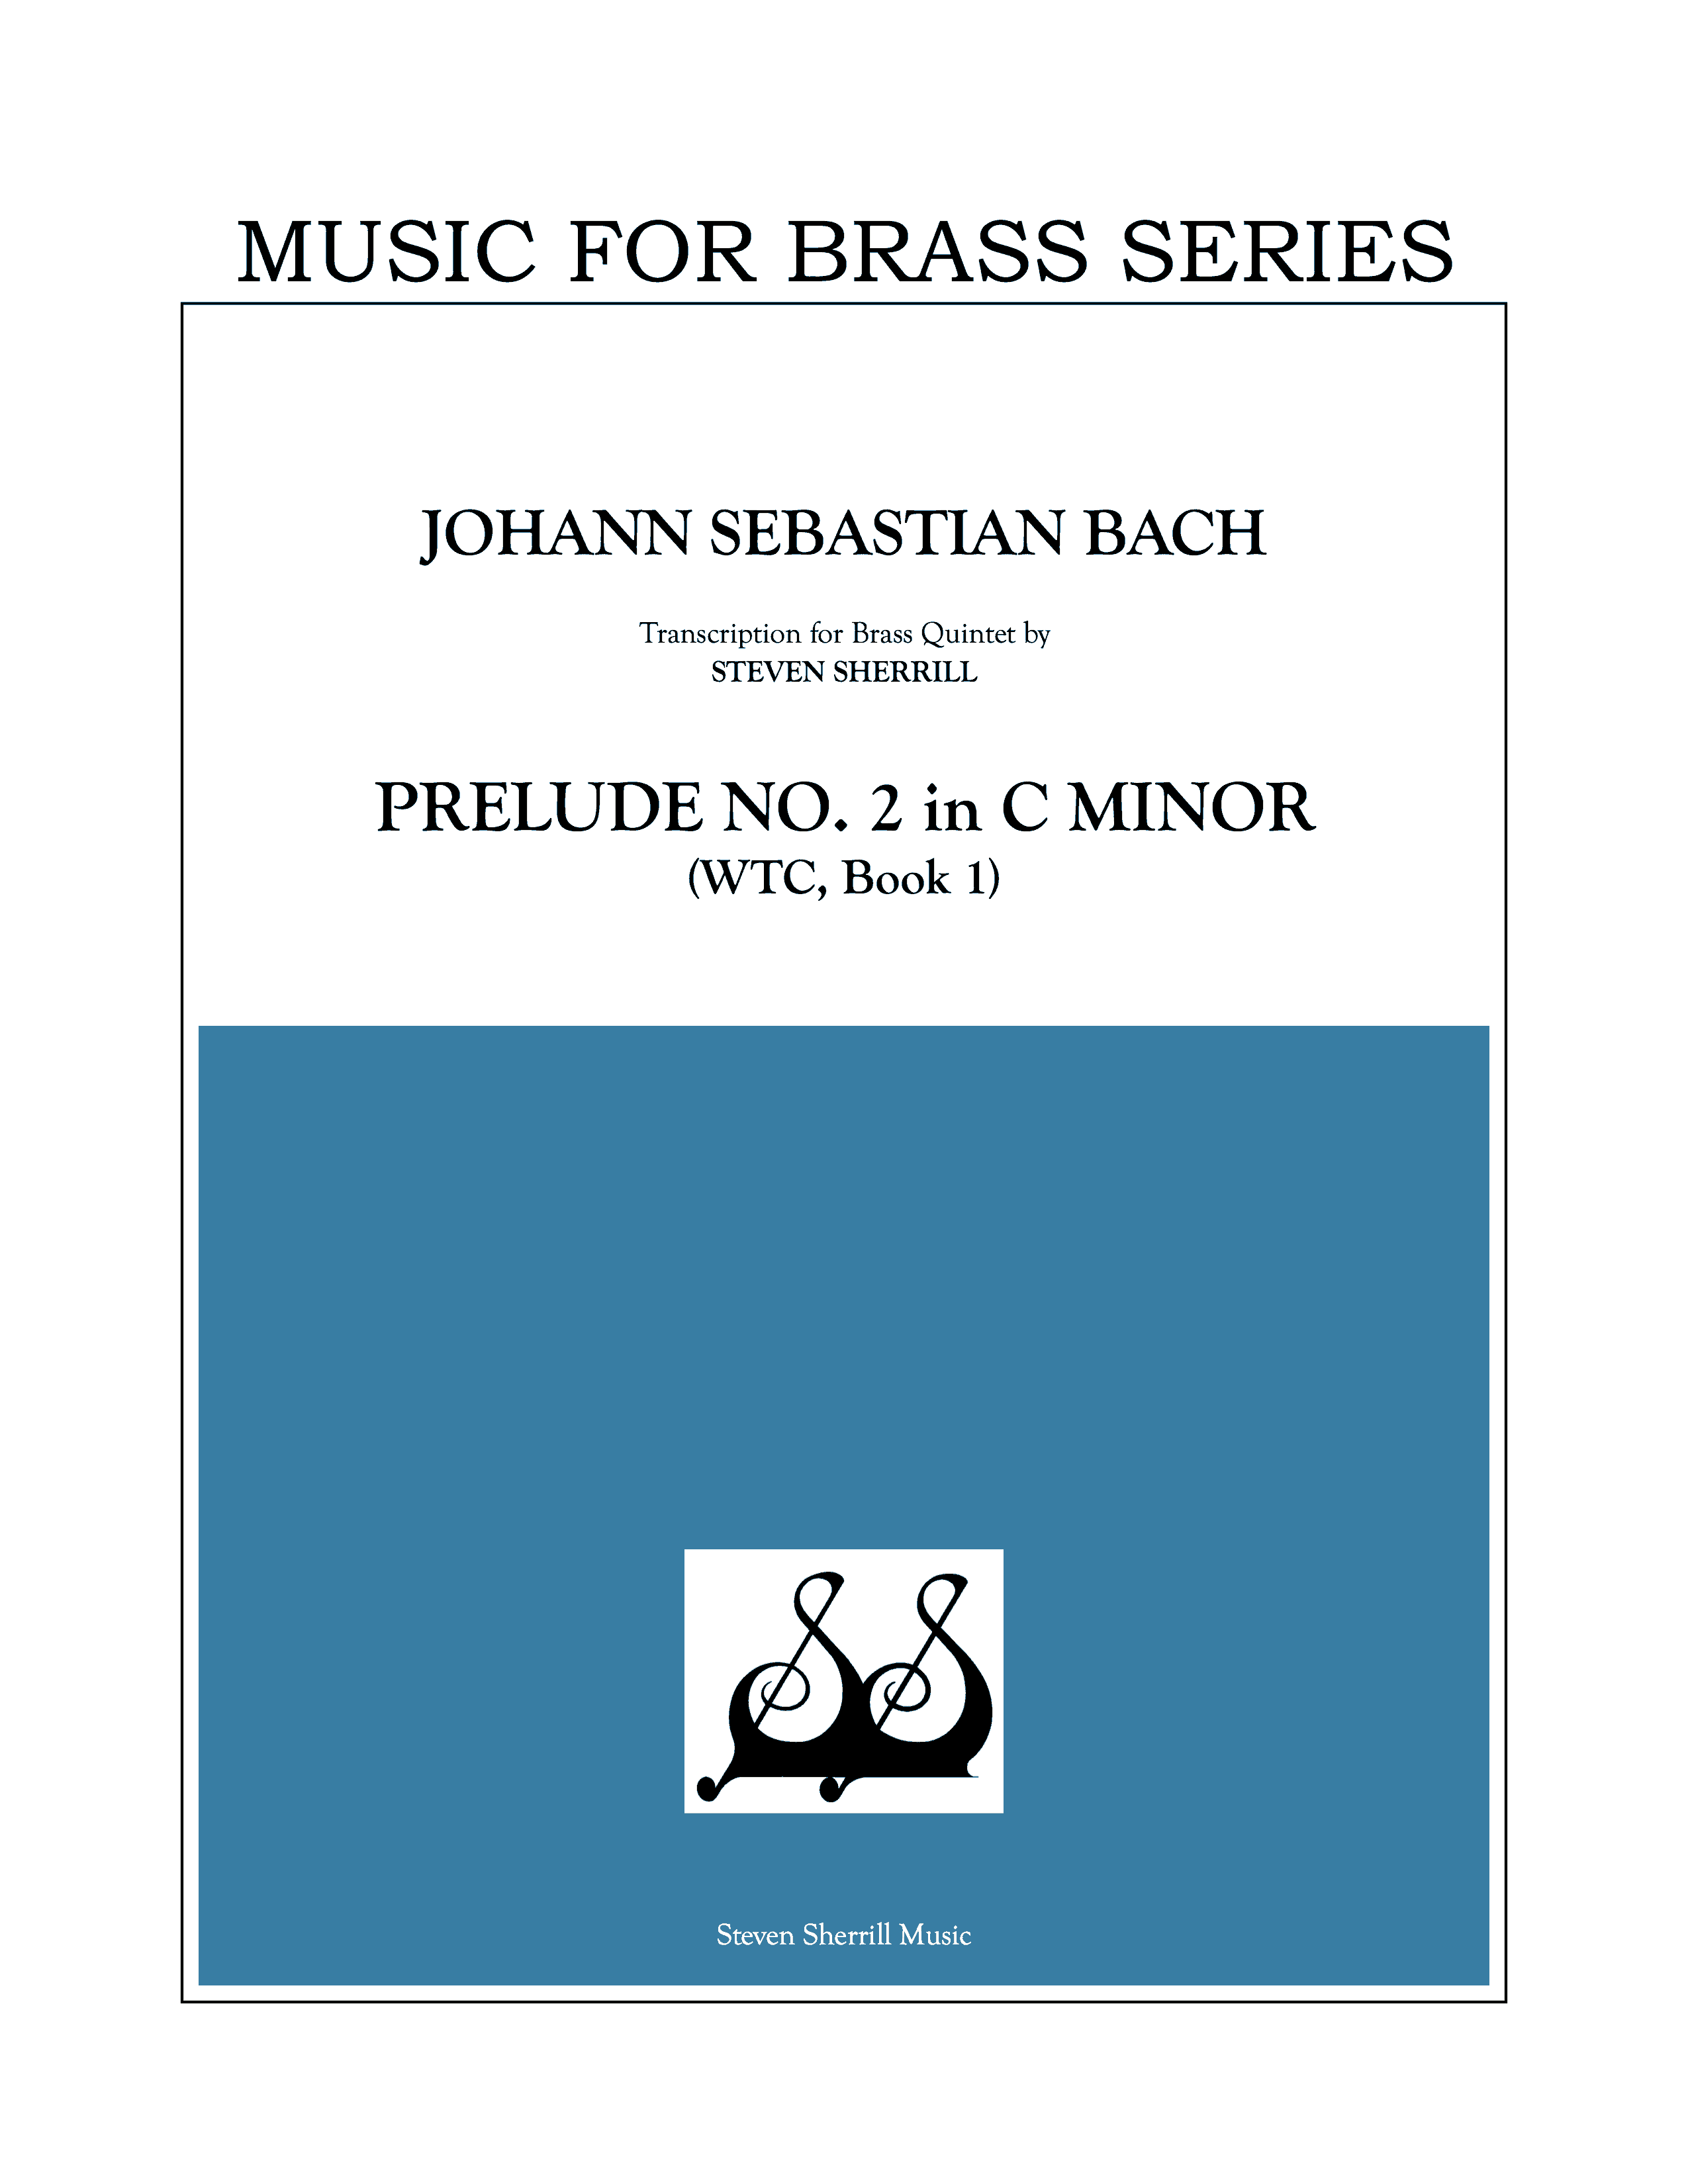 Prelude No. 2 in C Minor (WTC, Book 1) cover page